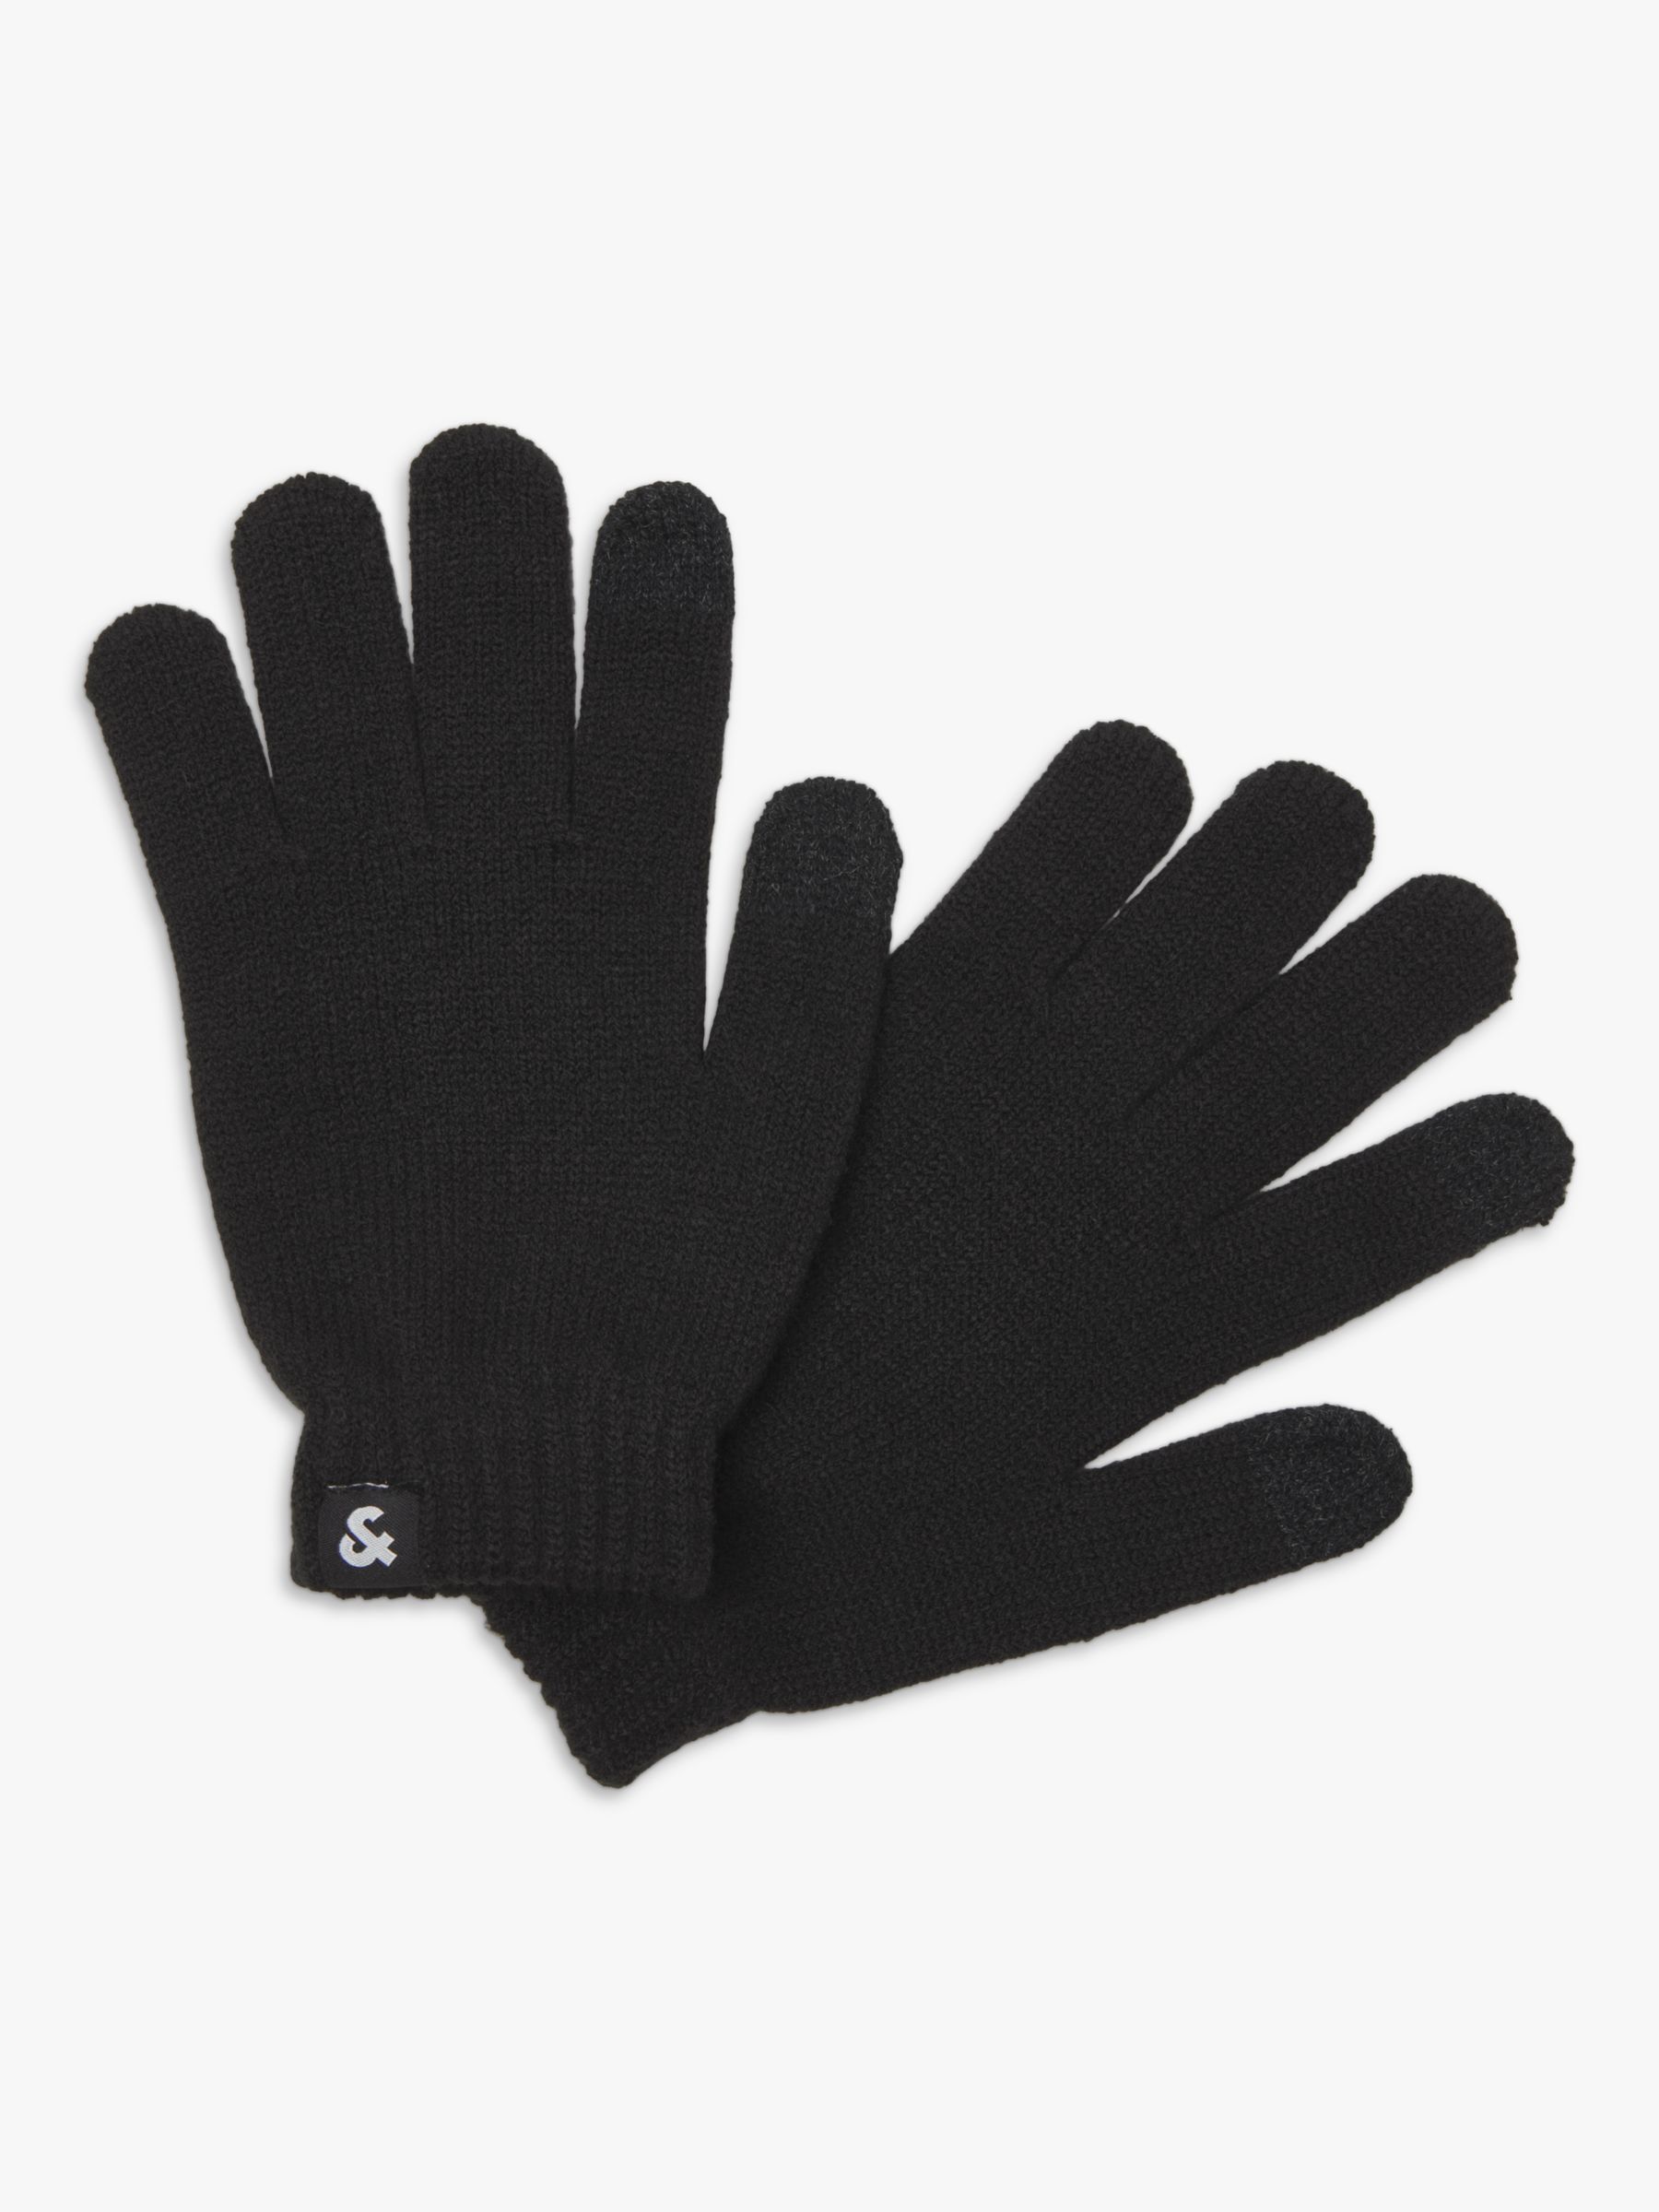 Buy Jack & Jones Kids' Knitted Gloves, Black Online at johnlewis.com